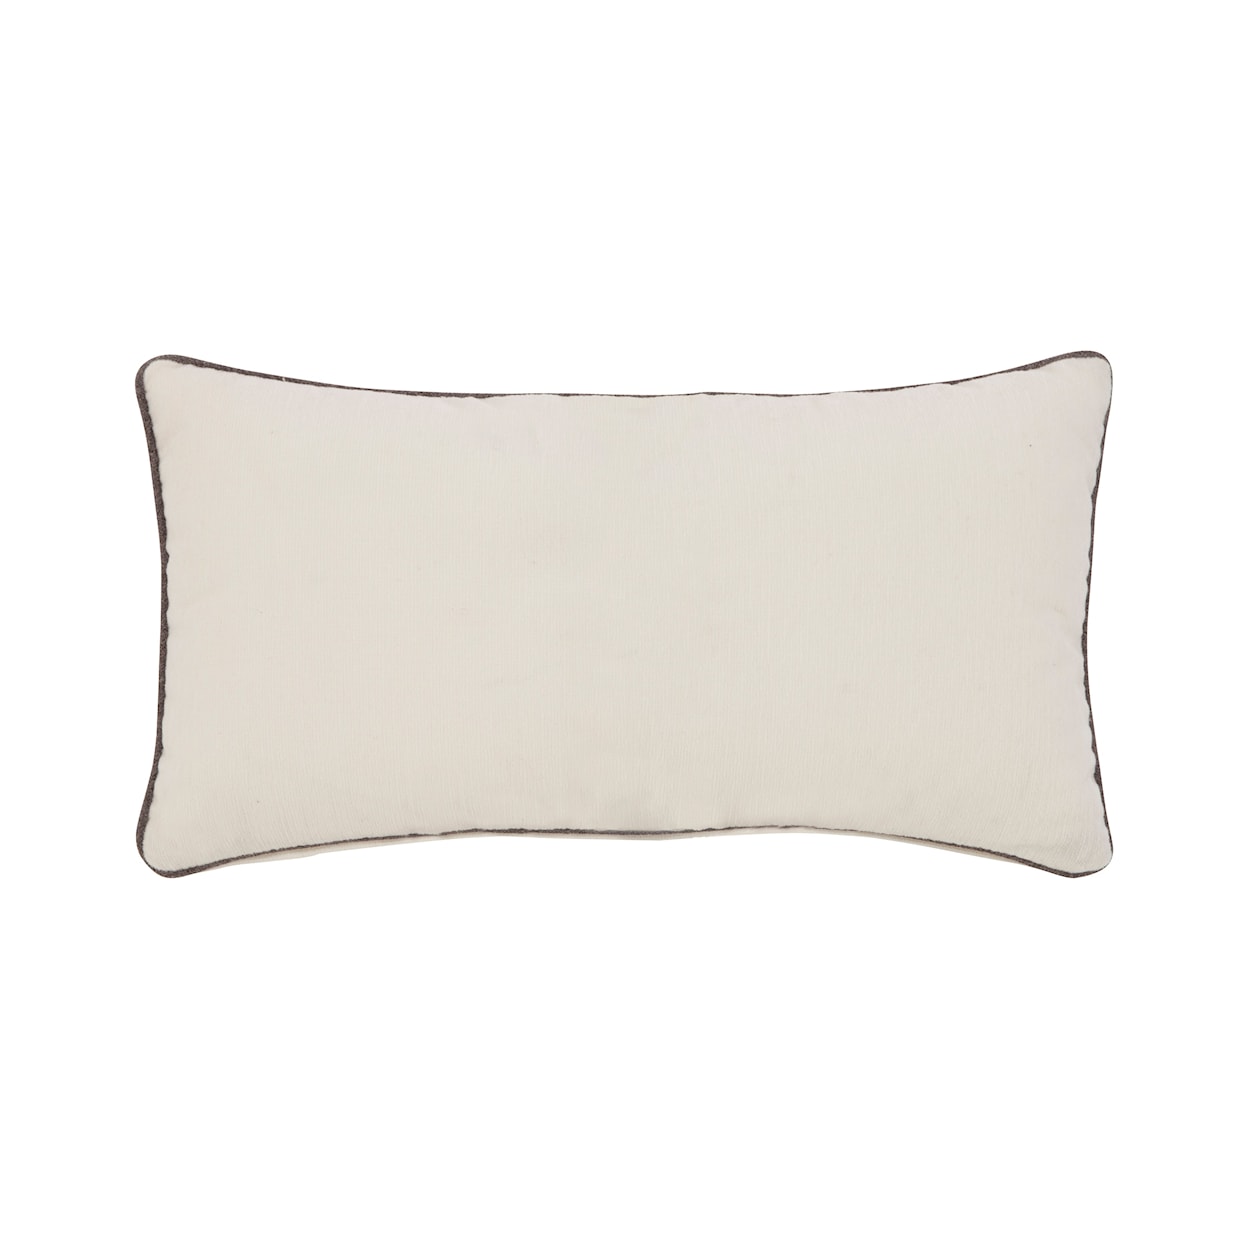 Bernhardt Bernhardt Exteriors Outdoor Throw Pillow